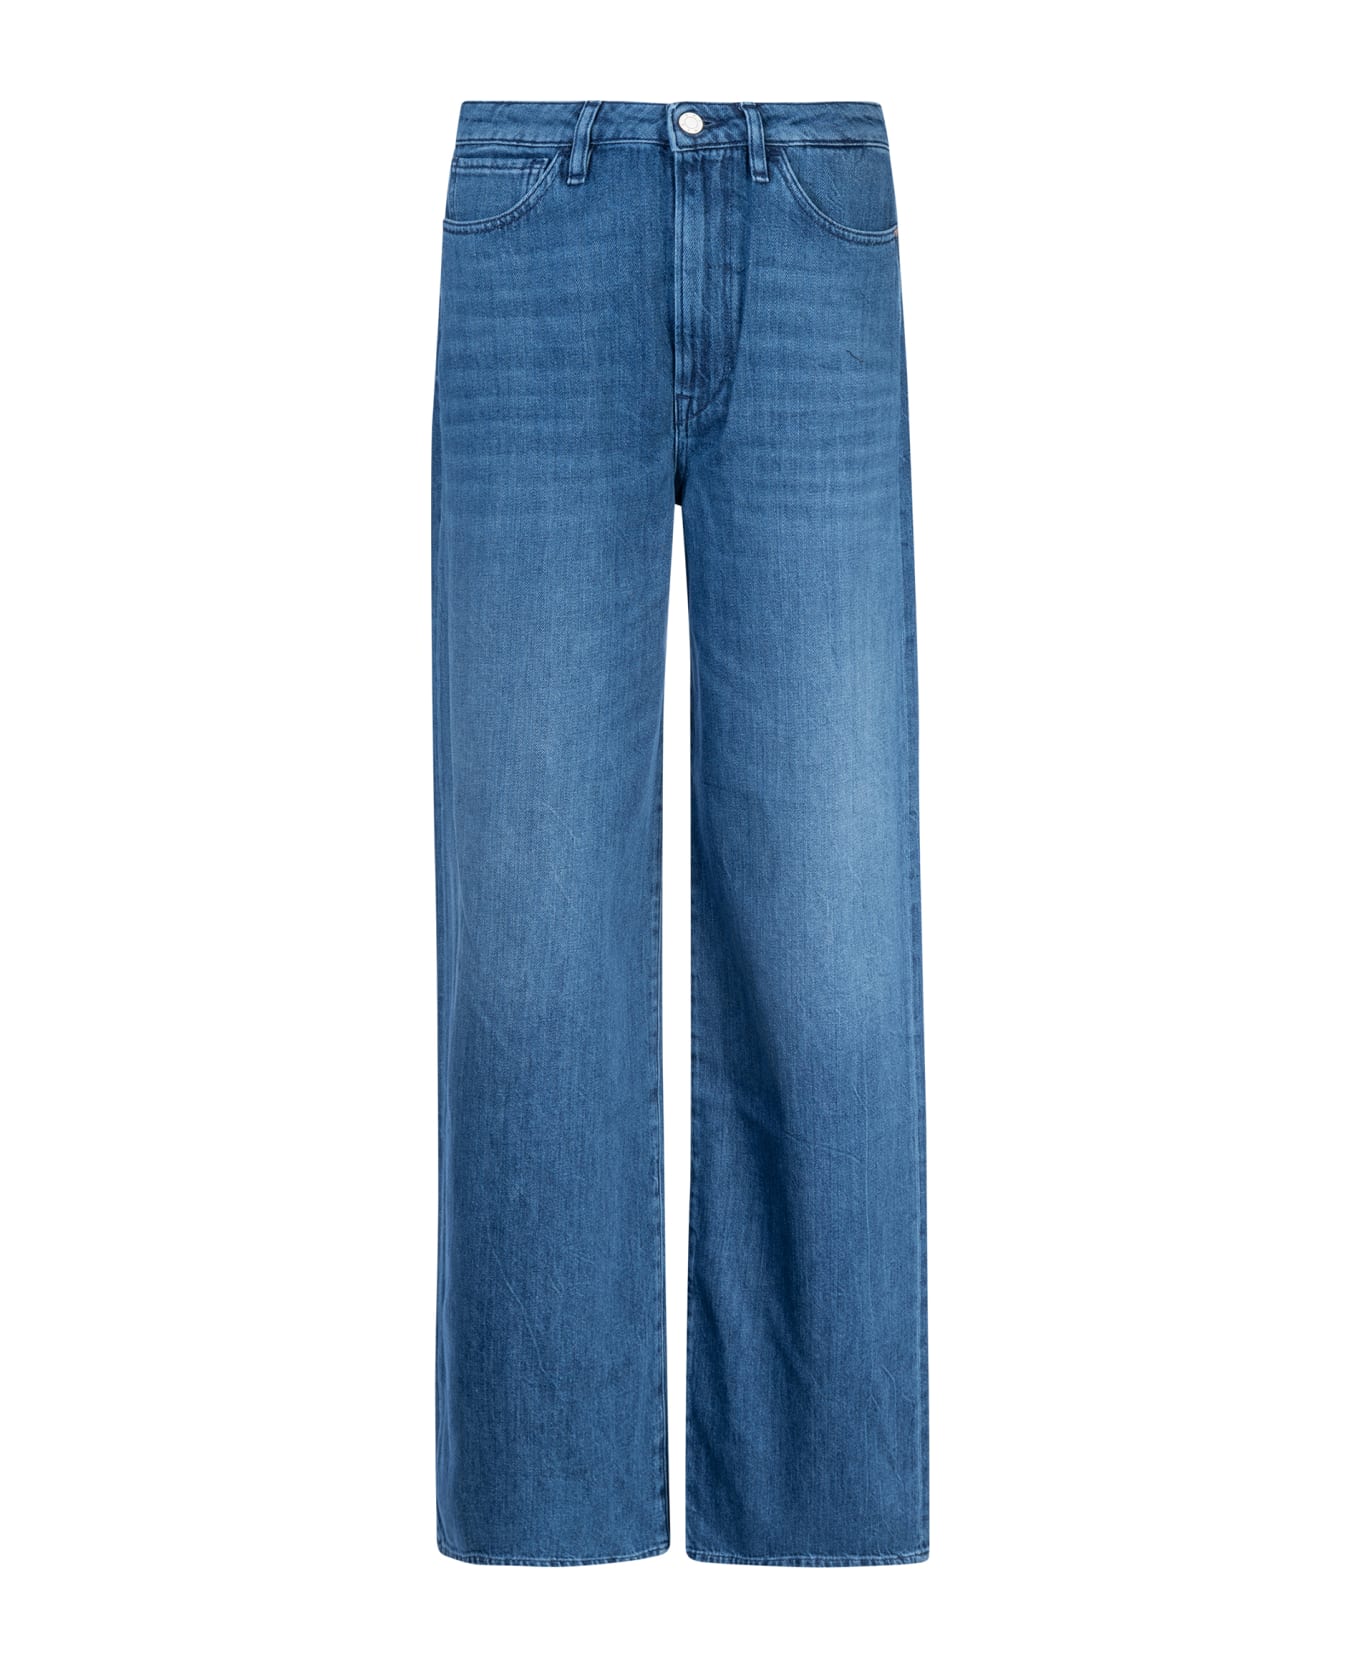 3x1 Flip Jeans - Midstone